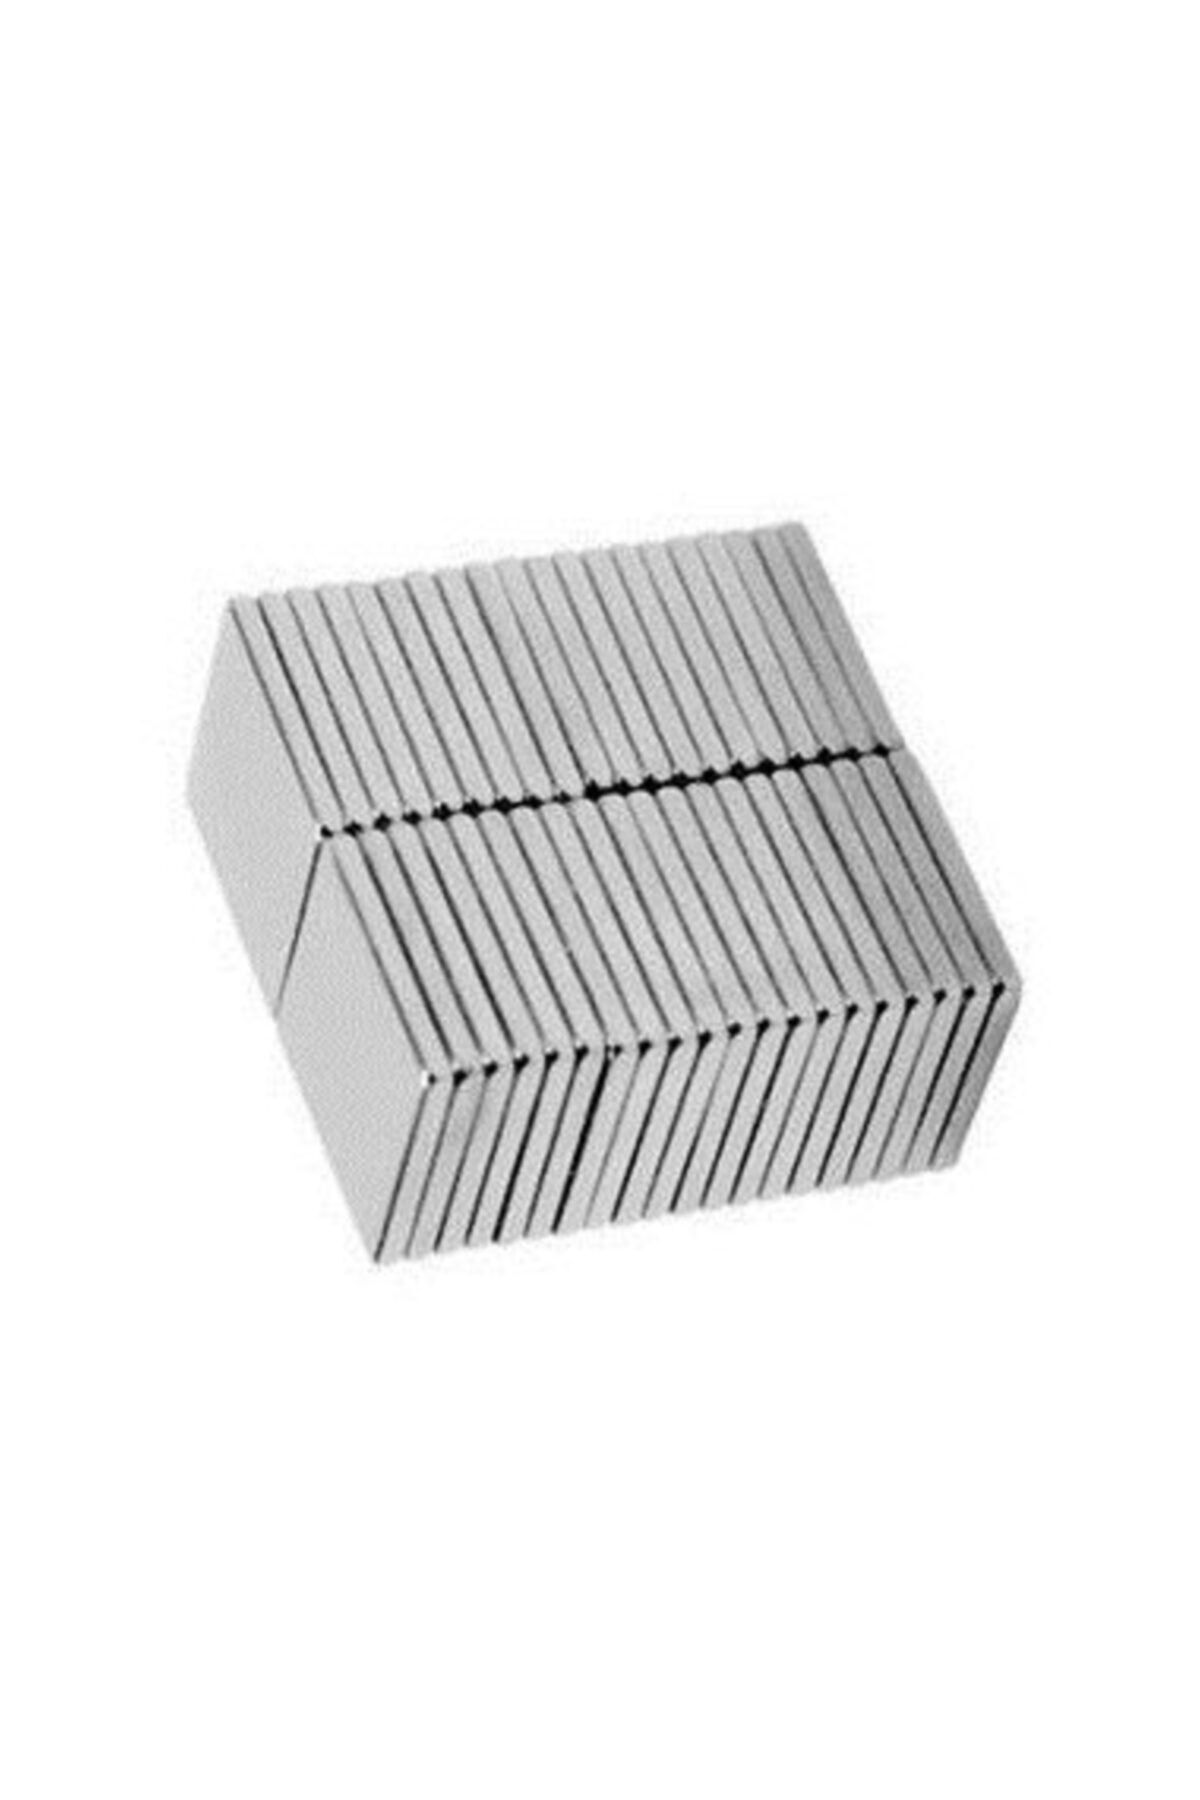 Dünya Magnet 100 Adet 10x10x1 Süper Güçlü Kare Neodyum Mıknatıs Magnet (100'lü Paket)